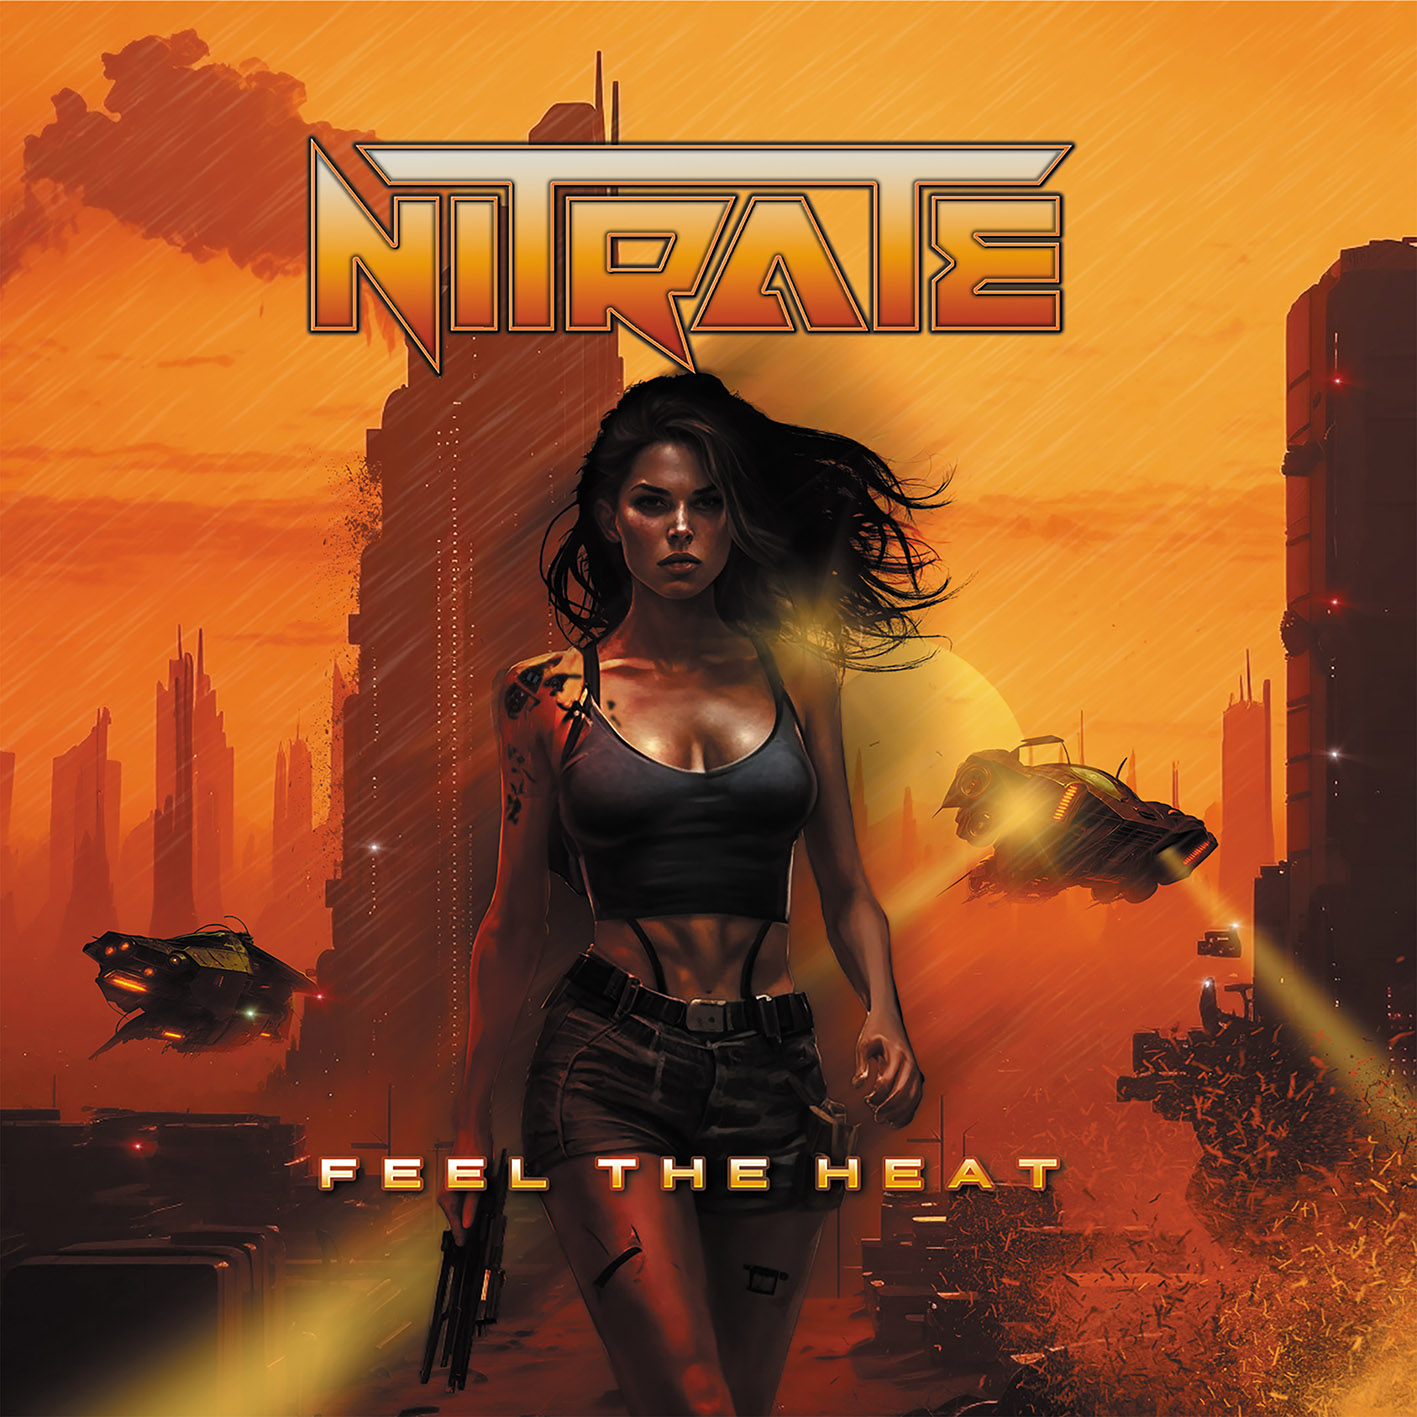 Nitrate – Feel The Heat